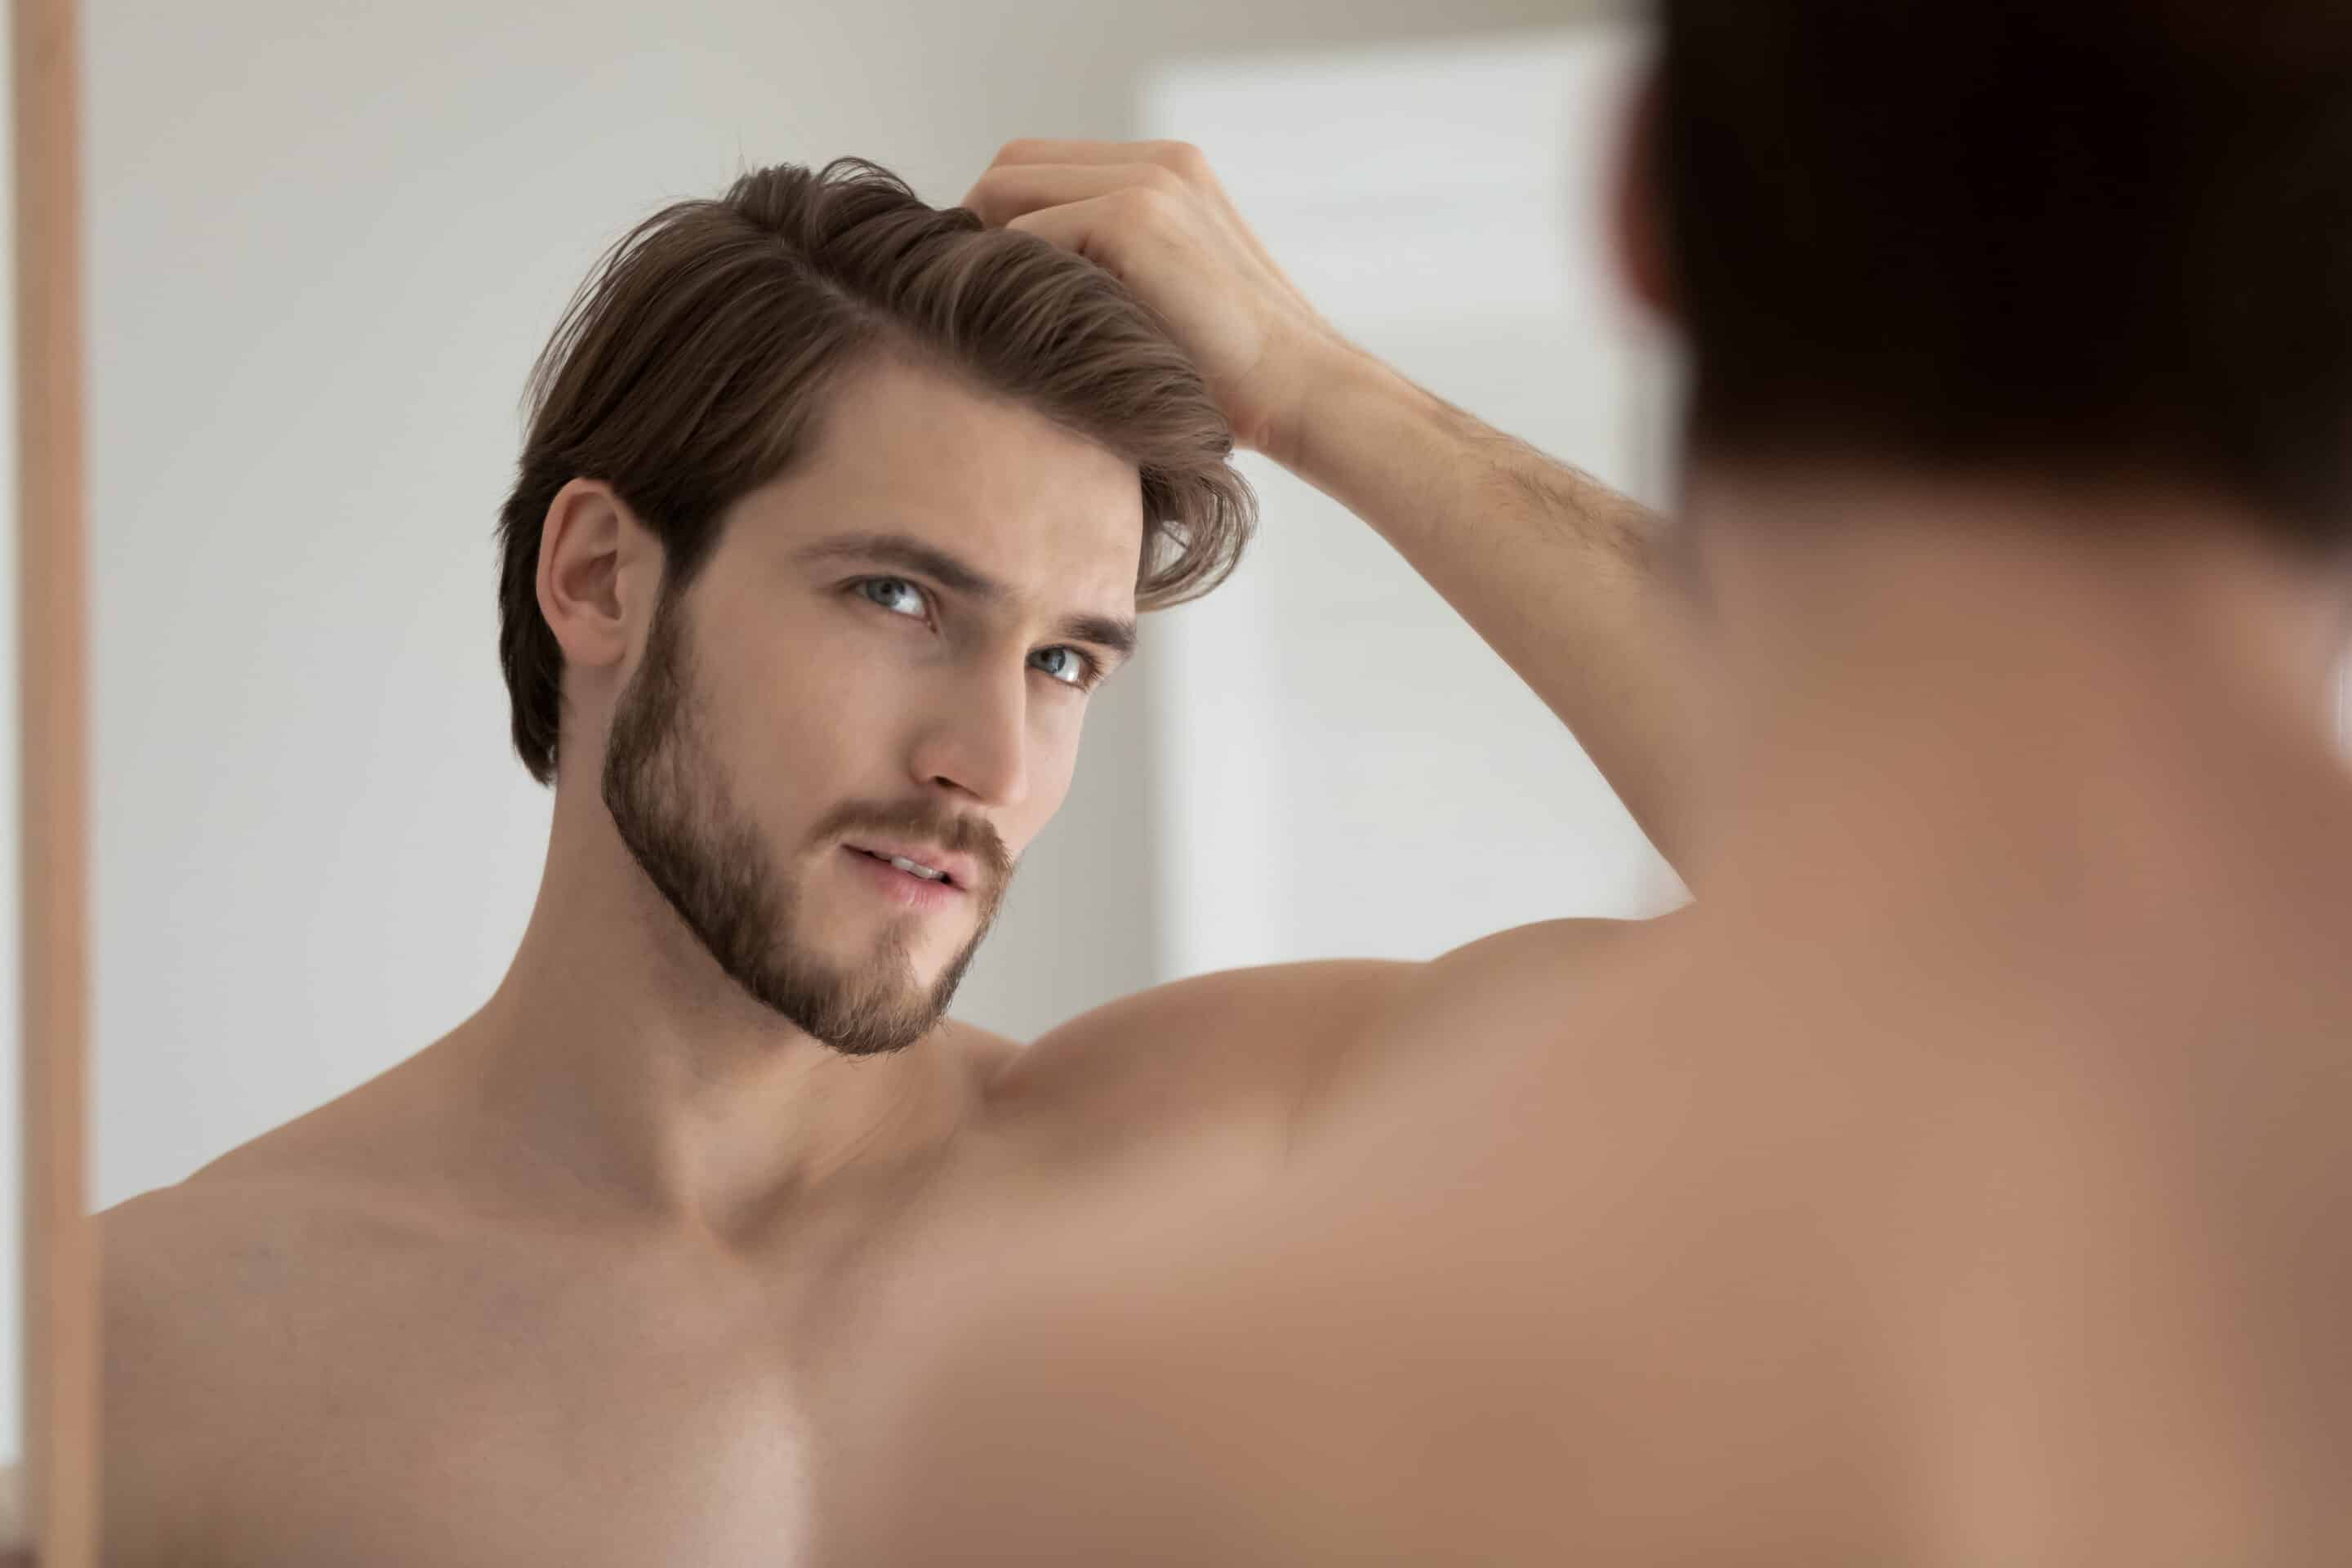 Ein Mann, der durch Corona an Haarausfall litt, betrachtet seine Haare nach einer Haartransplantation im Spiegel